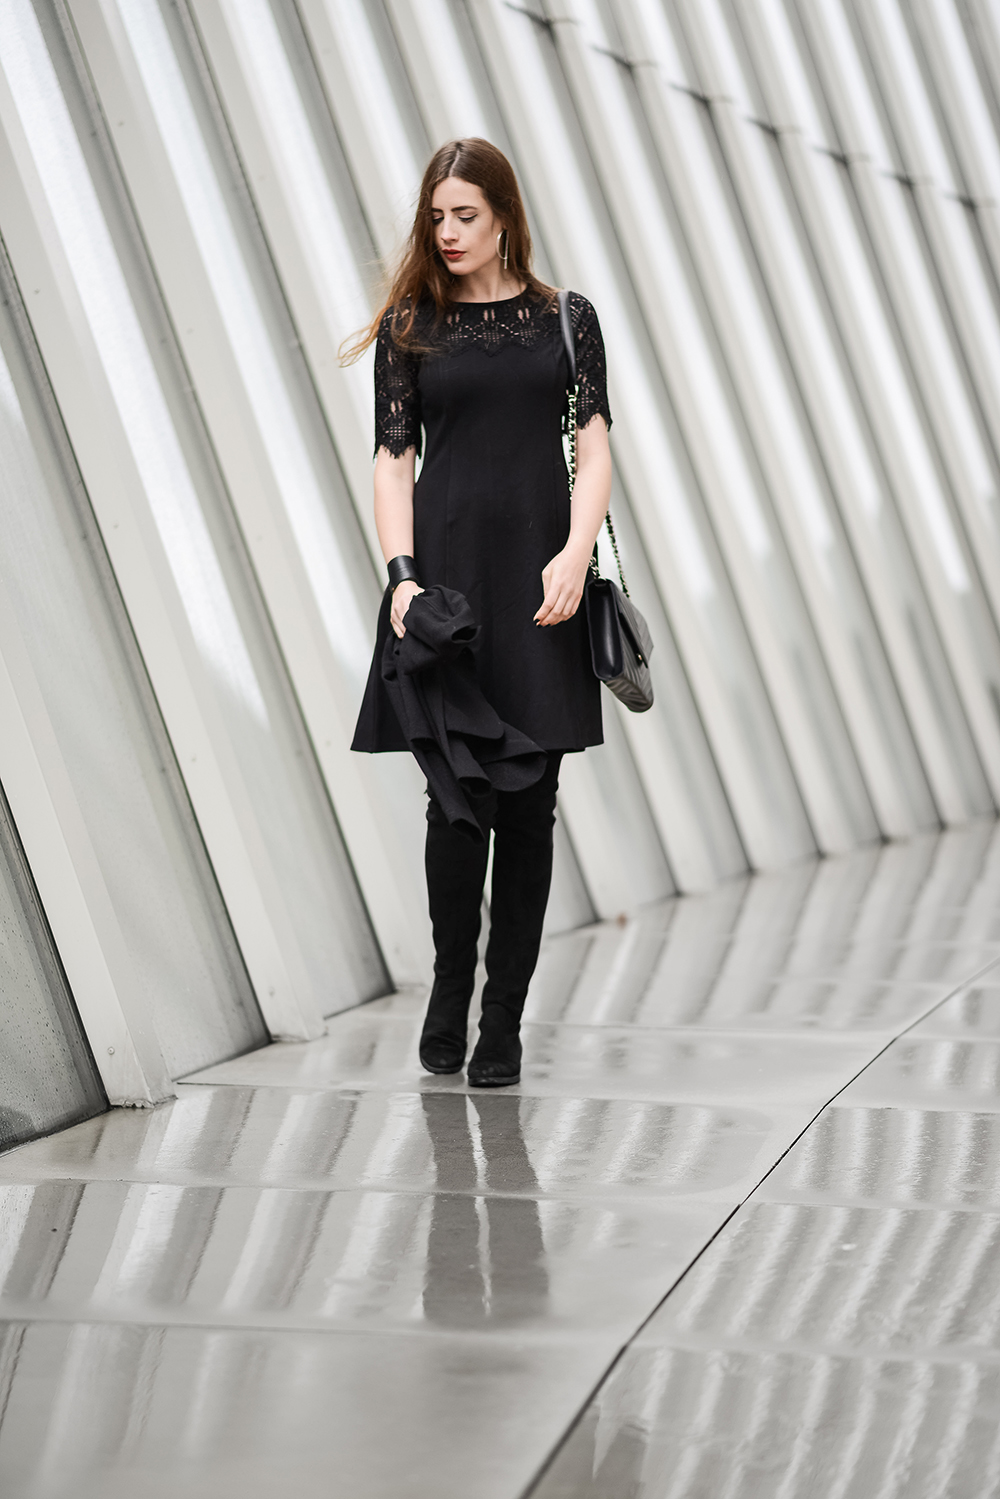 Schwarzes Kleid mit Spitze-Overknees-Stiefel-Modeblog Berlin-Abendlook-andysparkles.de